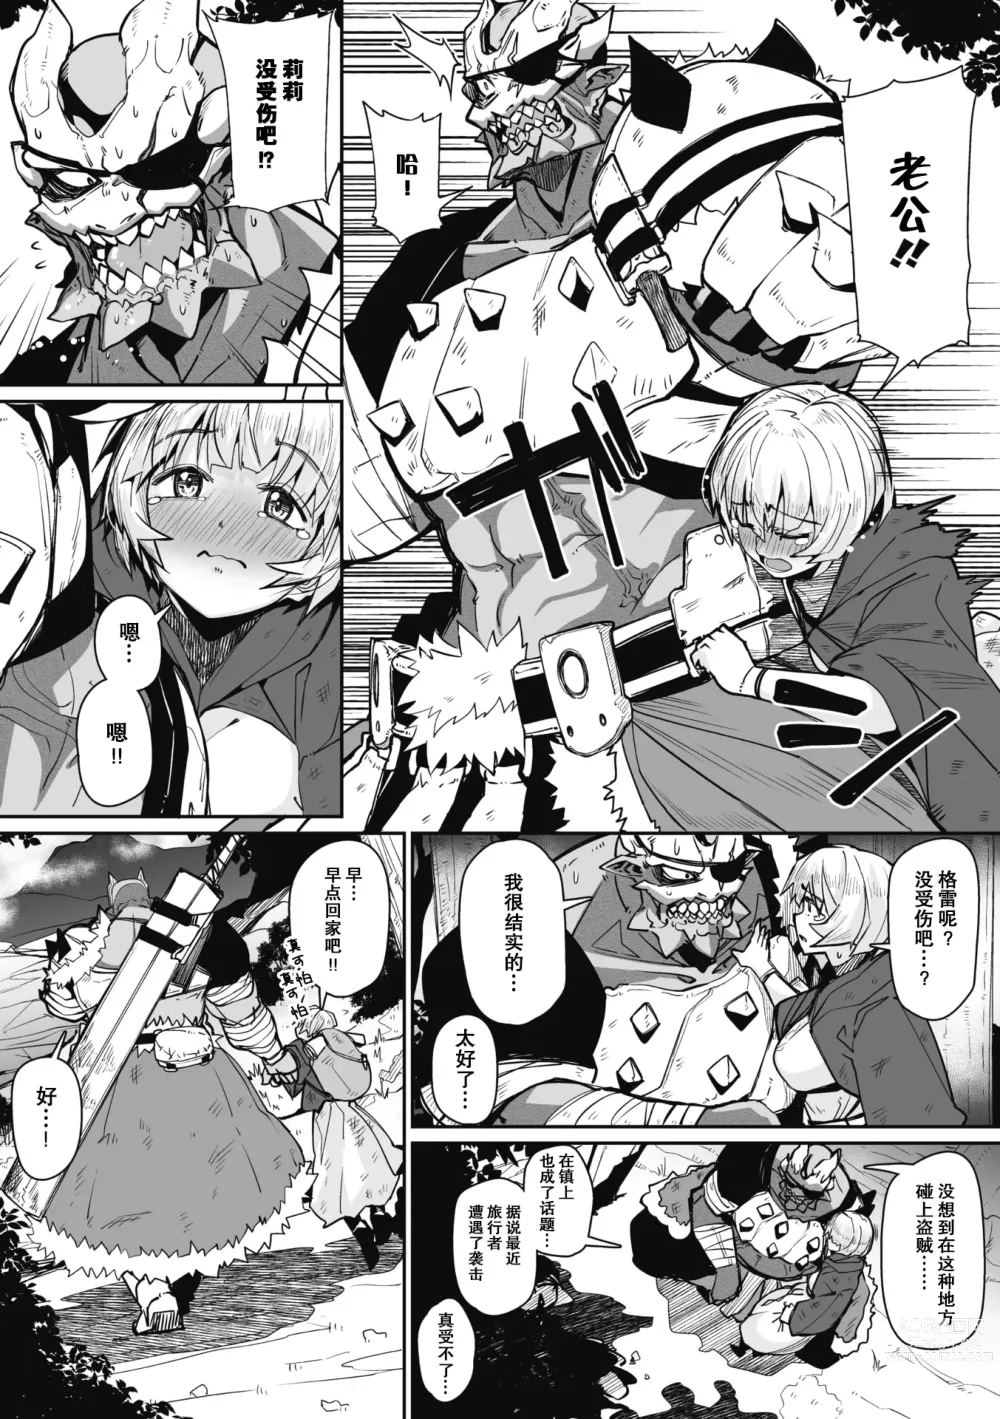 Page 3 of manga Link Ring